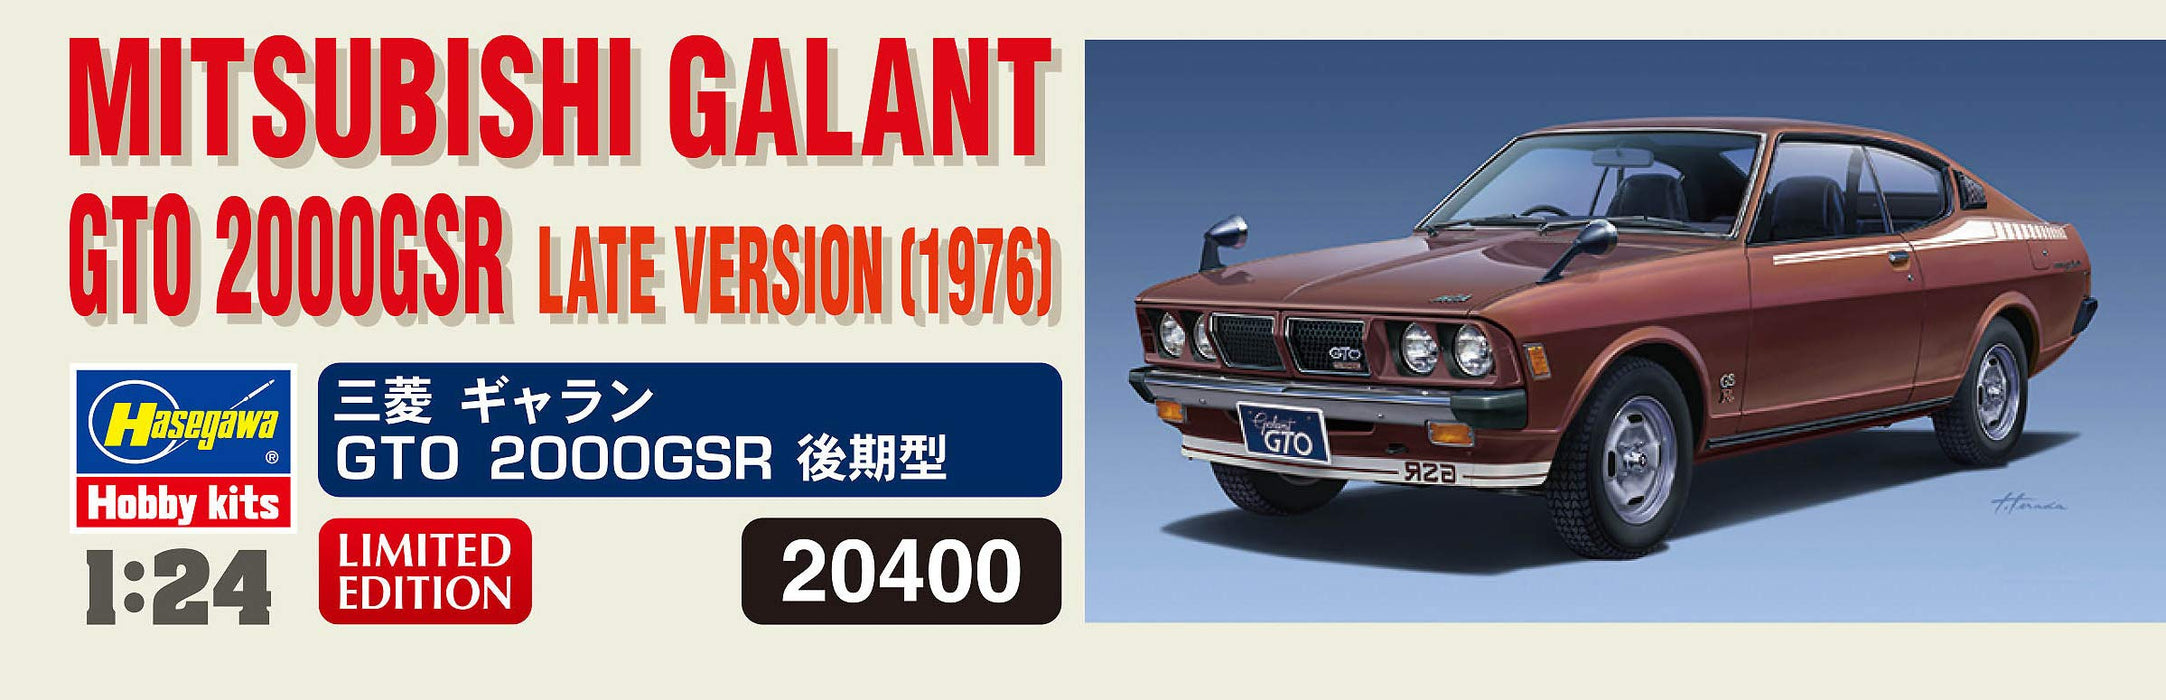 Hasegawa 20400 Mitsubishi Galant Gto 2000Gsr Kit de modèle de voiture de type tardif à l'échelle 1/24